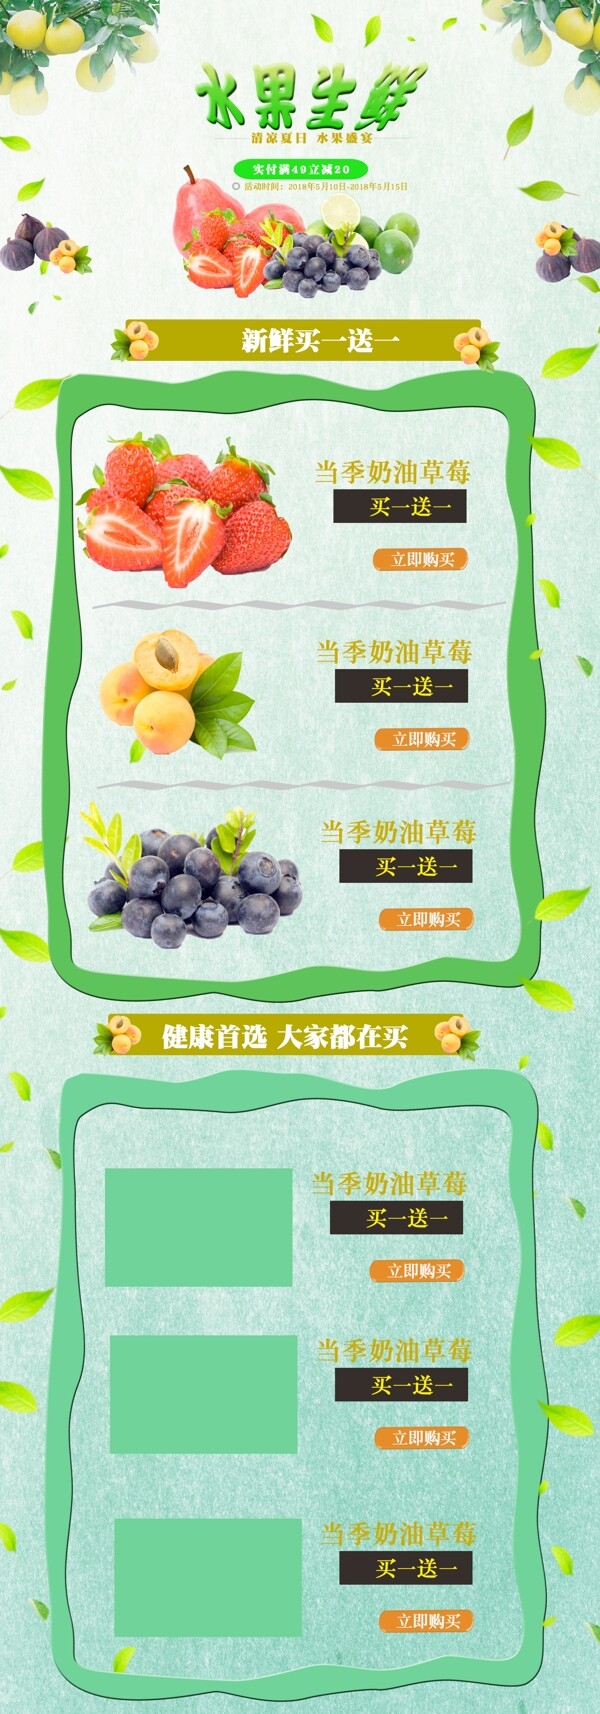 小清新绿色水果生鲜活动促销首页模板